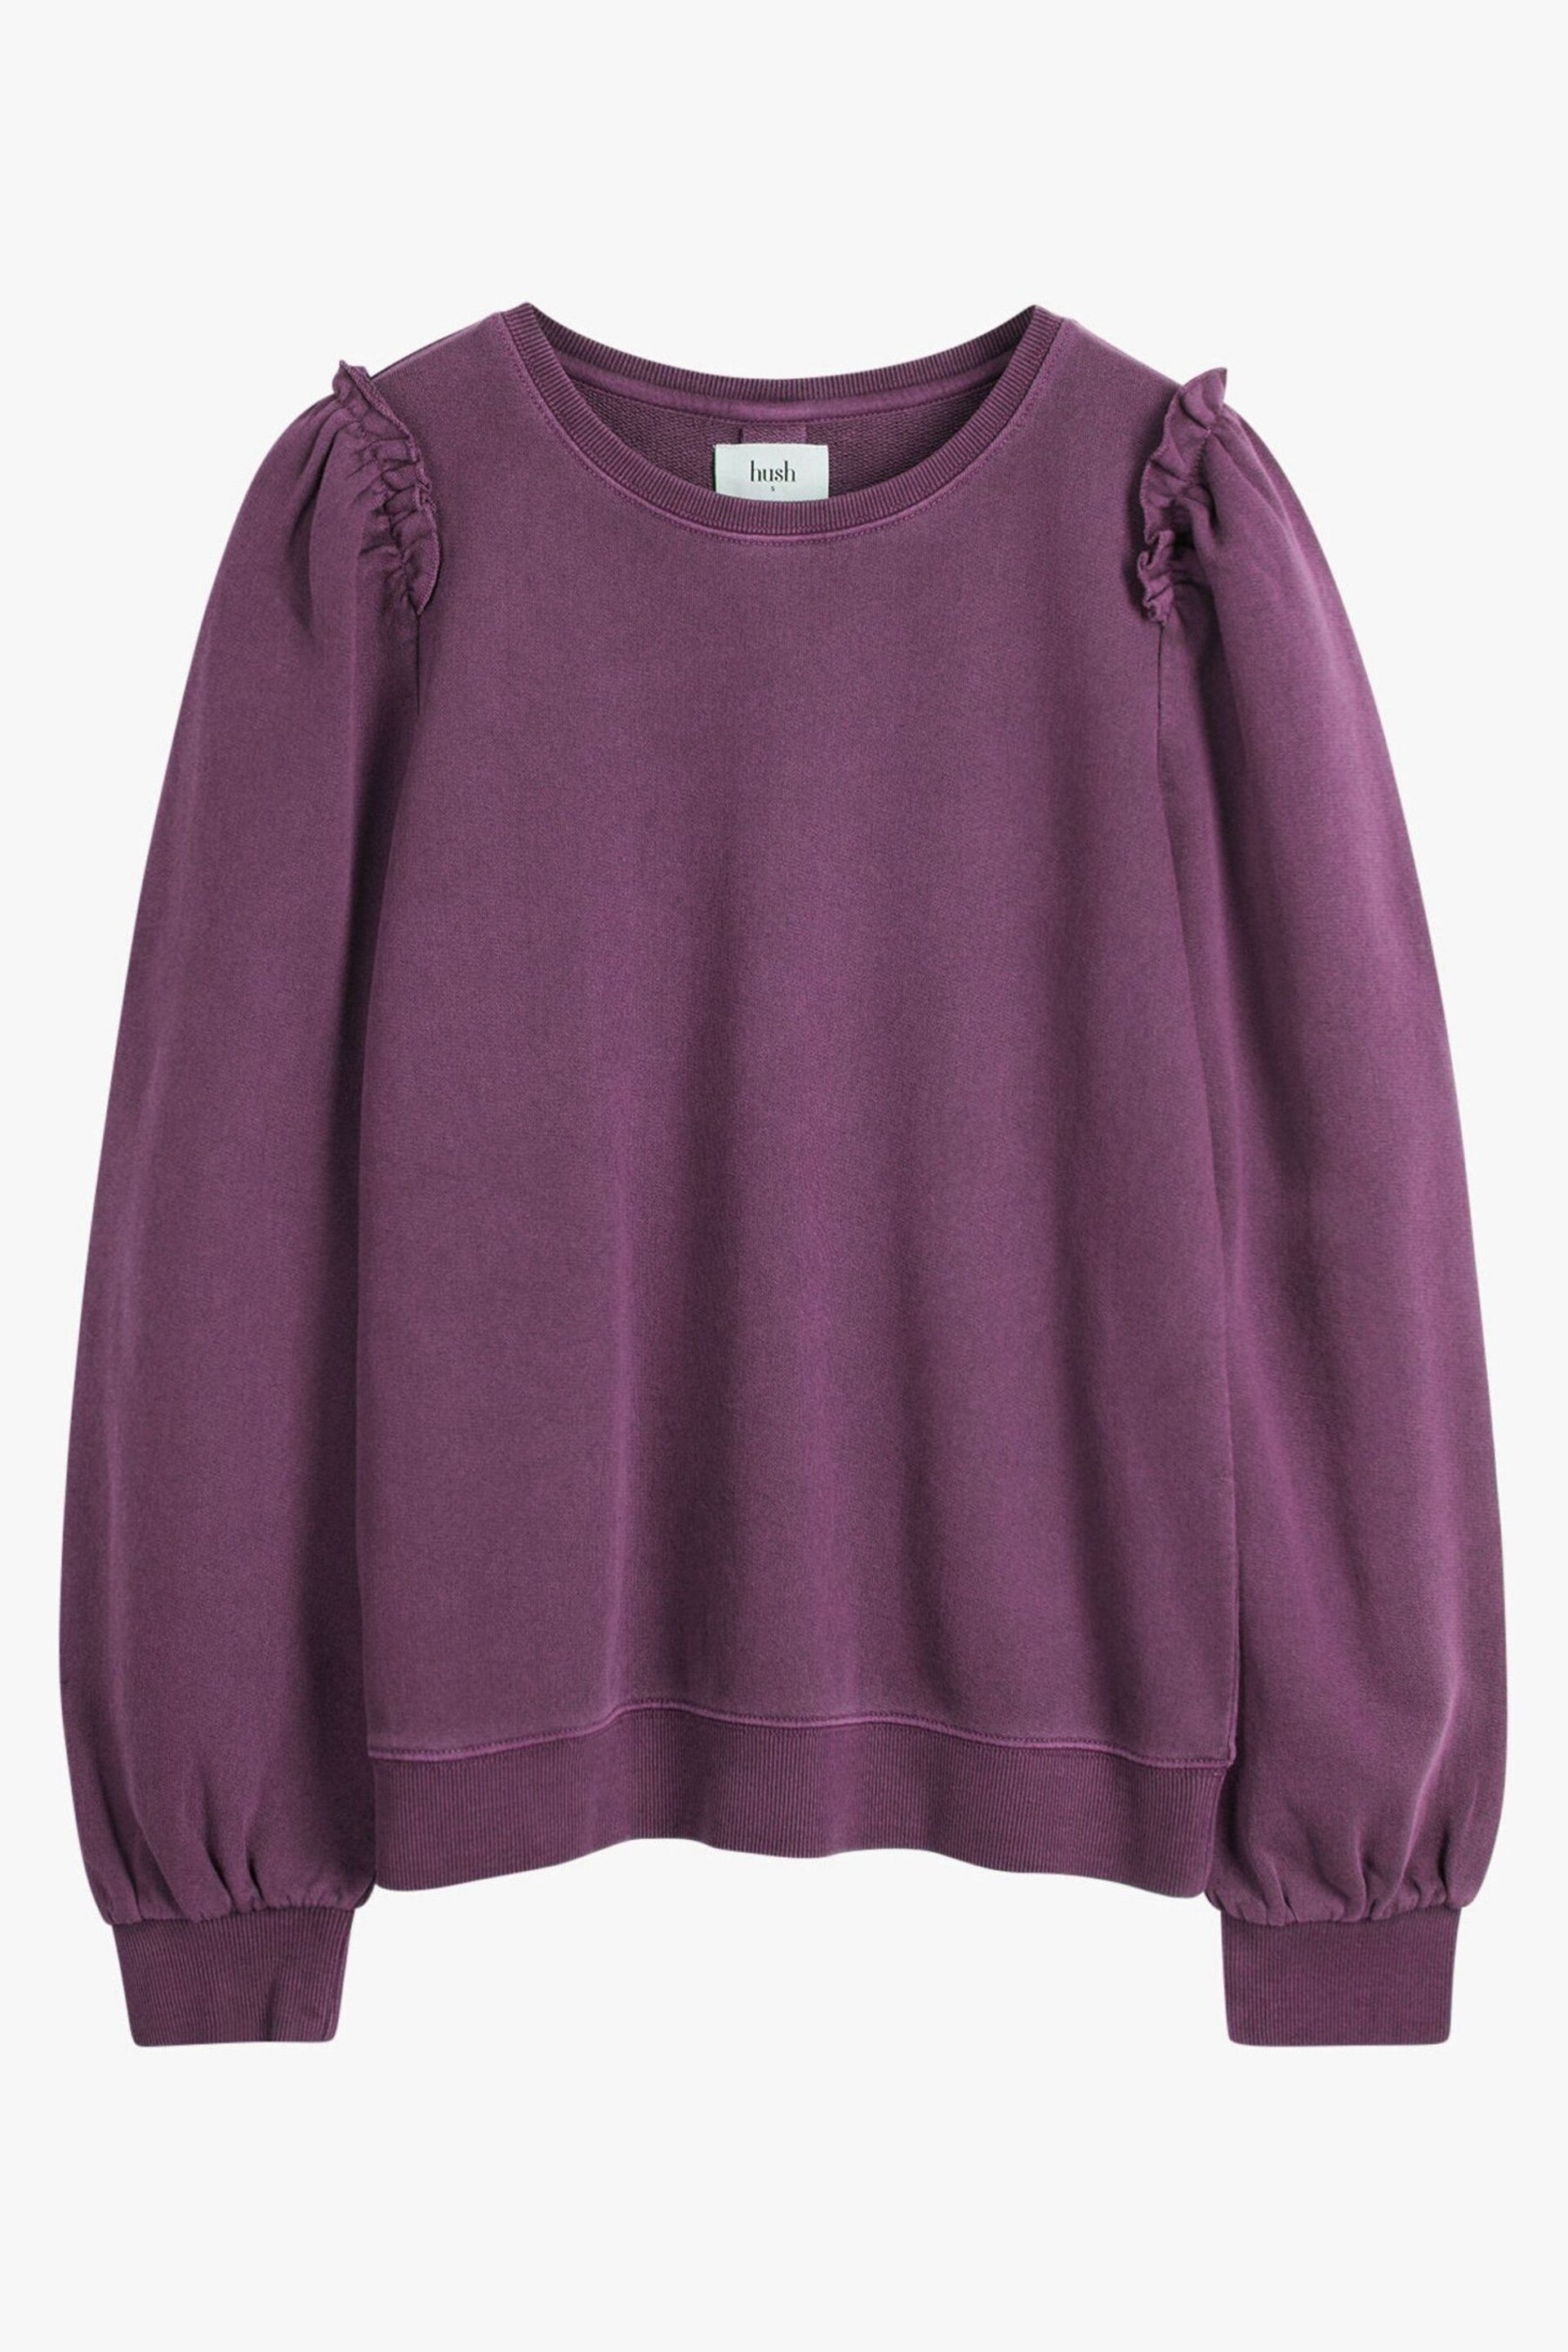 Hush Purple Emilia Ruffle Purple Sweatshirt - Image 5 of 5